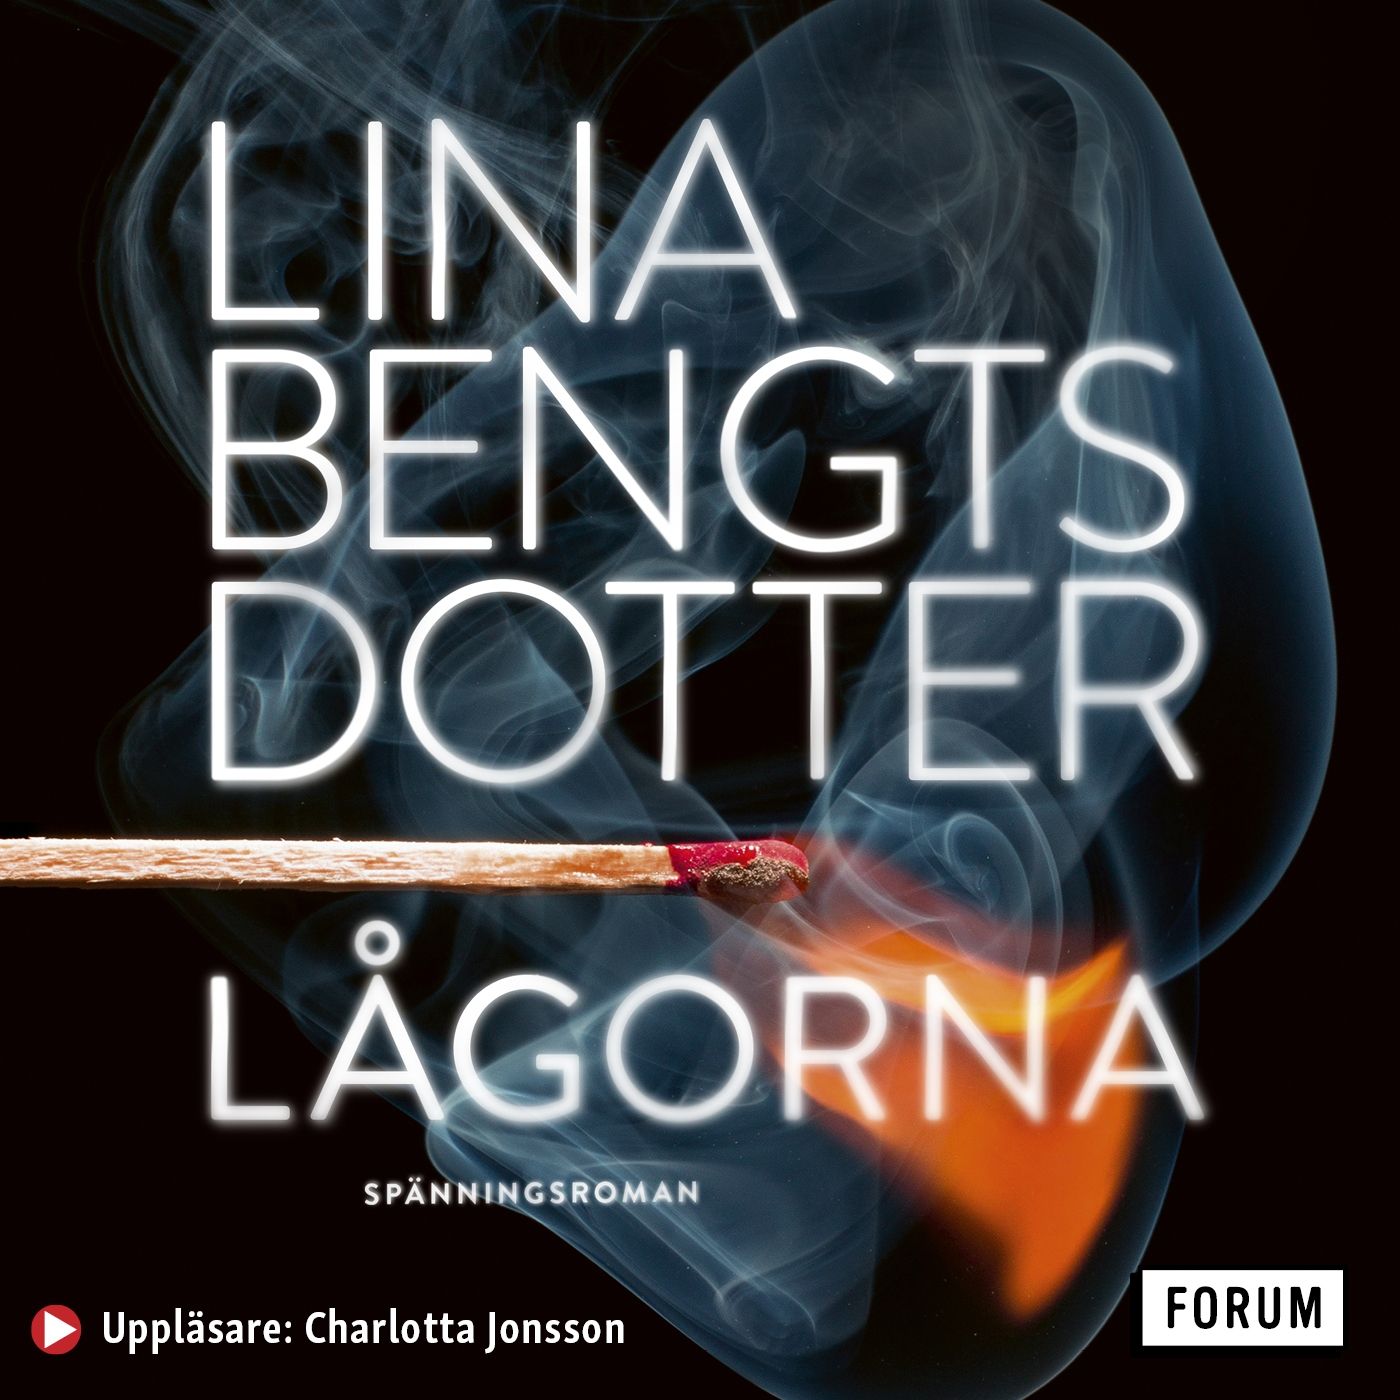 Lågorna, ljudbok av Lina Bengtsdotter